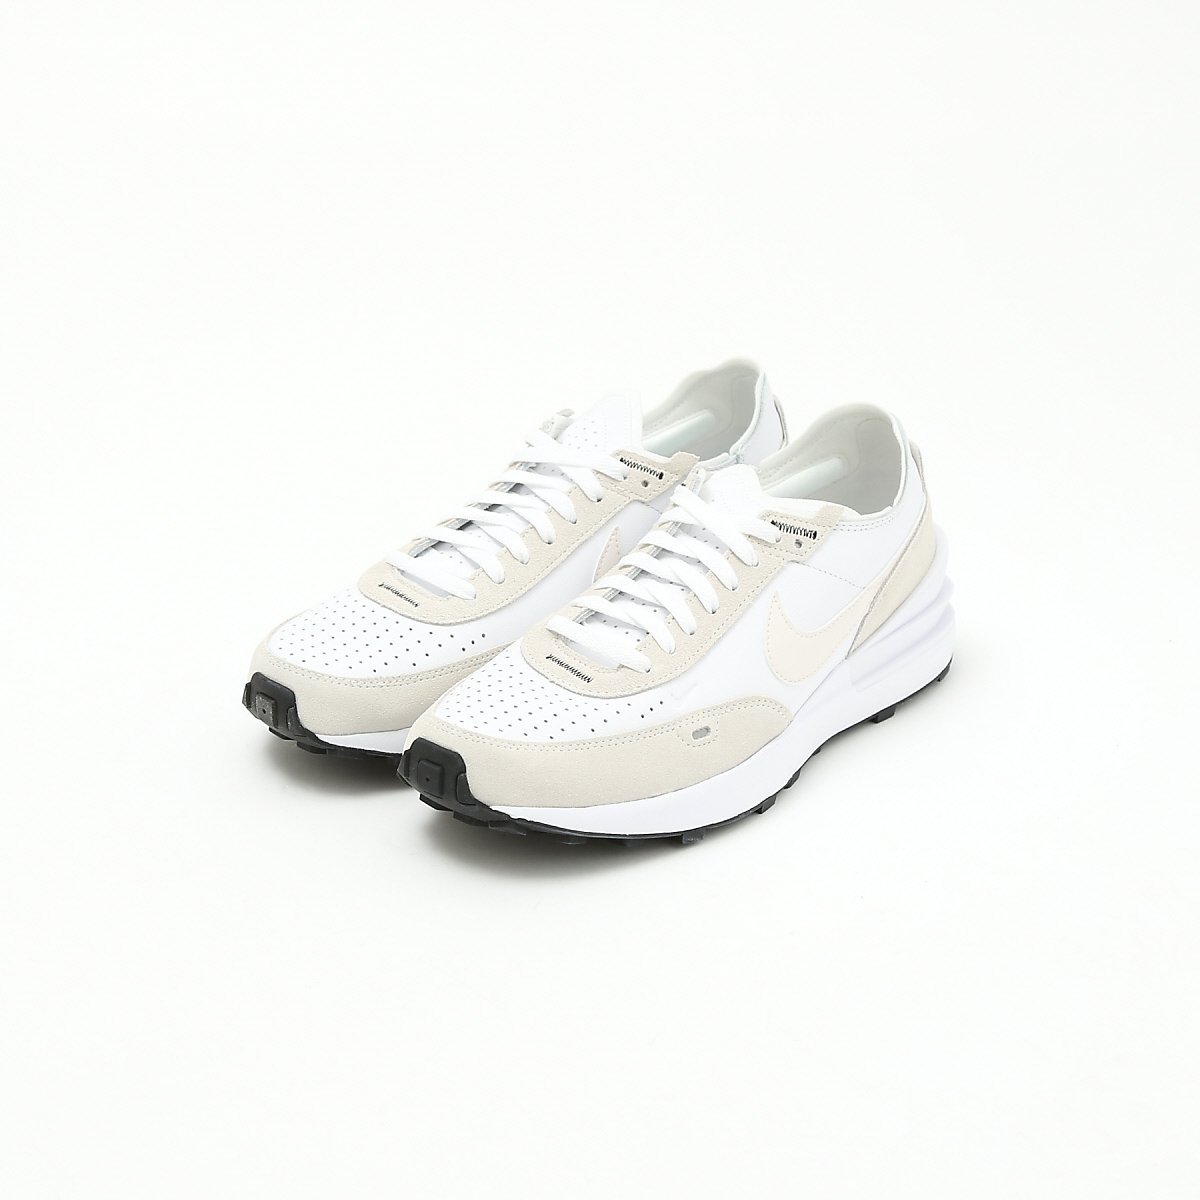 ナイキワッフルワンレザーメンズシューズ/NikeWaffleOneLeatherMen'sShoes